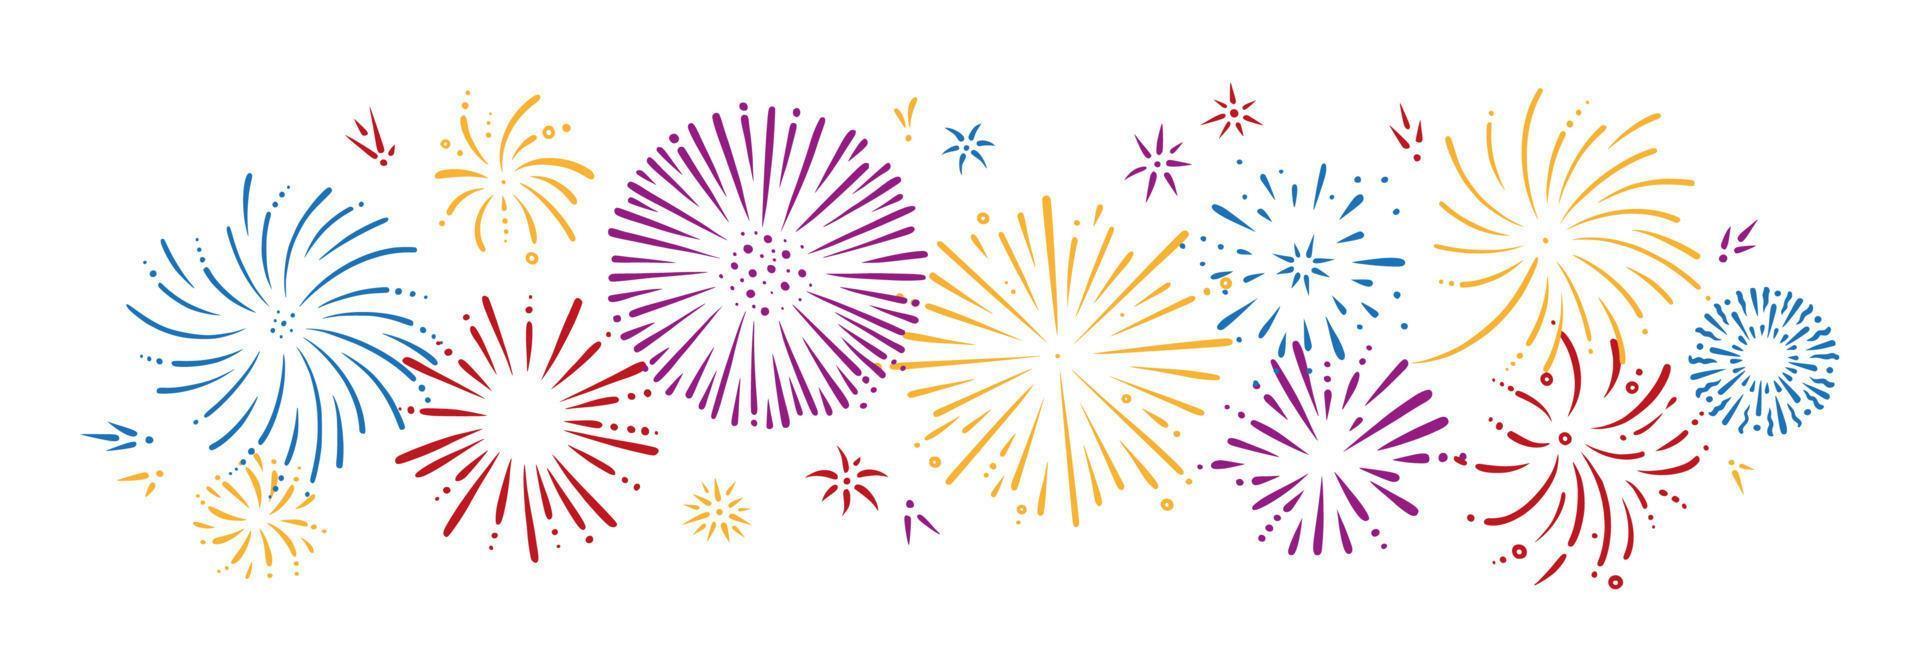 conjunto de fogos de artifício doodle colorido. preliminares brilhantes para festas e comemorações. ilustração vetorial vetor